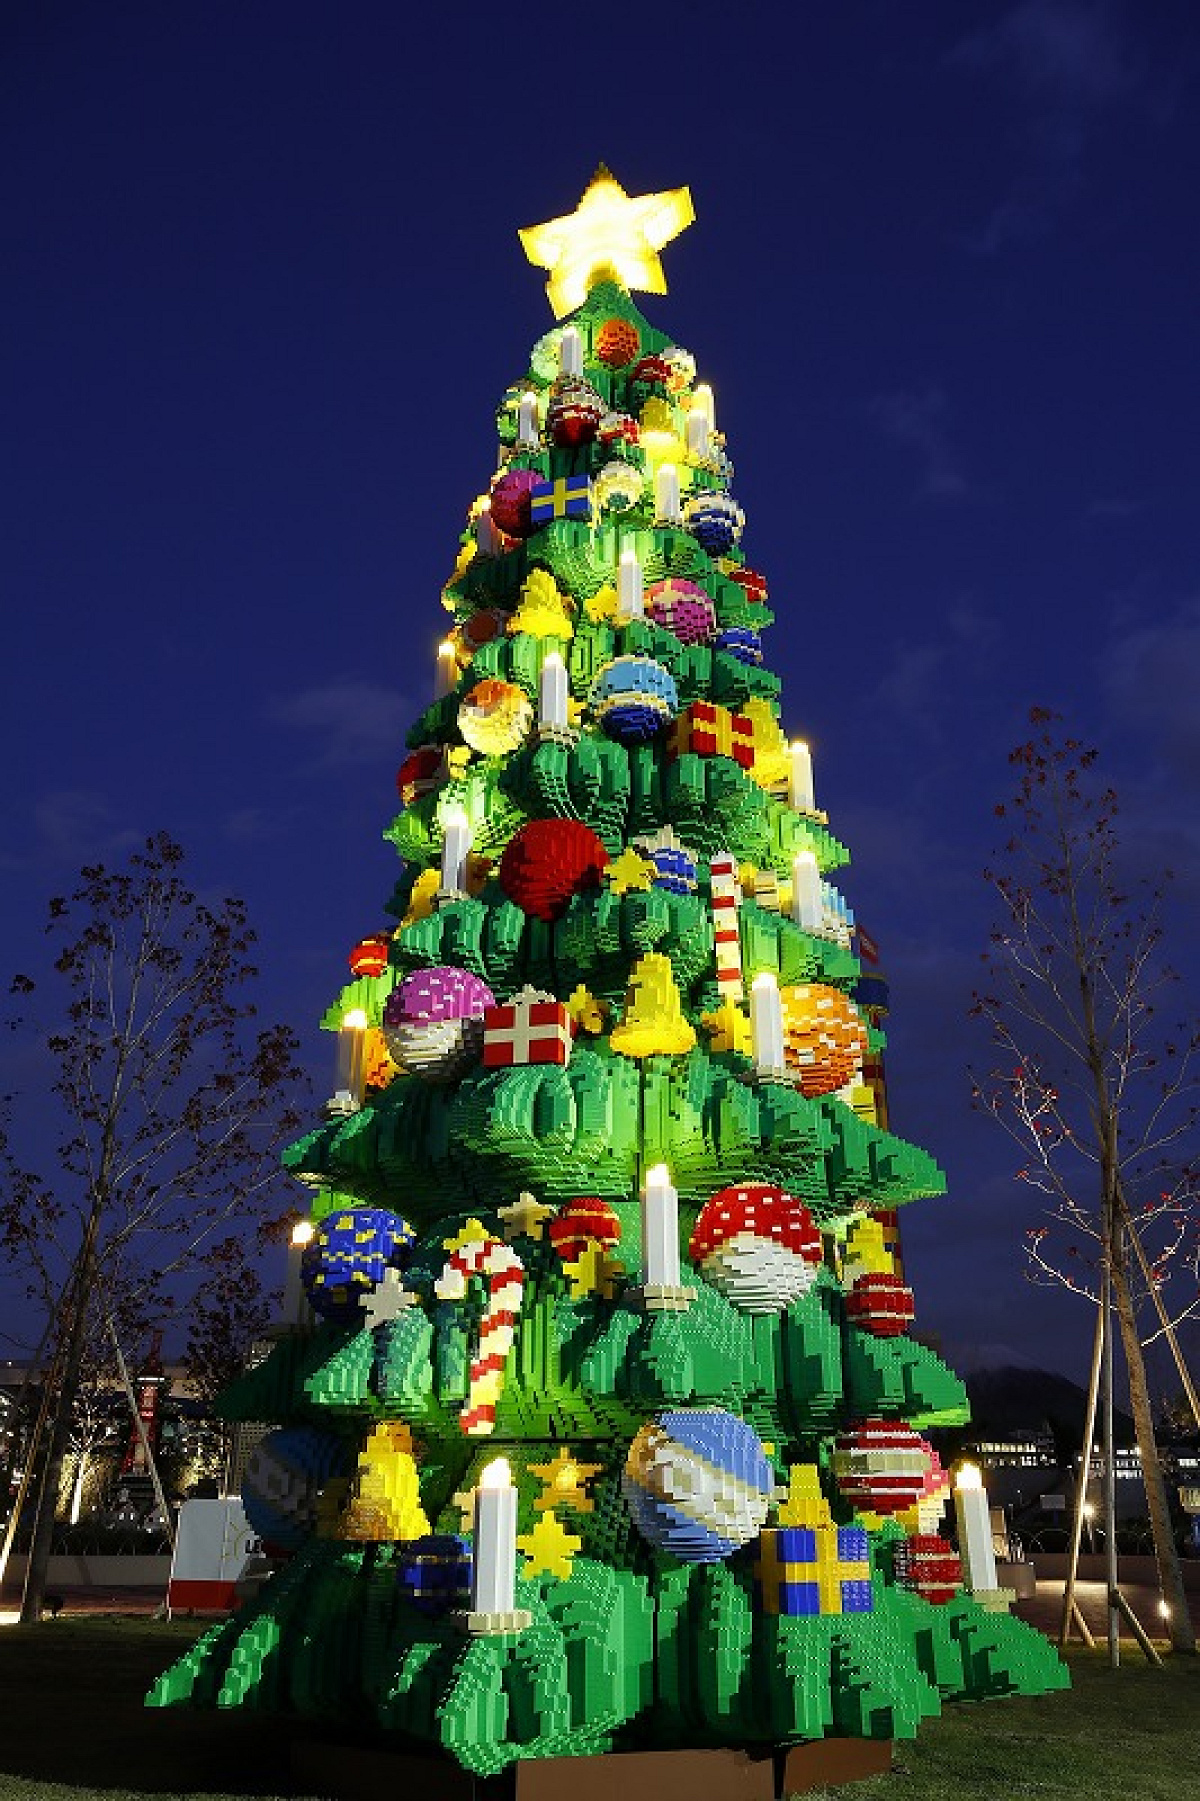 レゴブロックで作られた「クリスマスツリー」